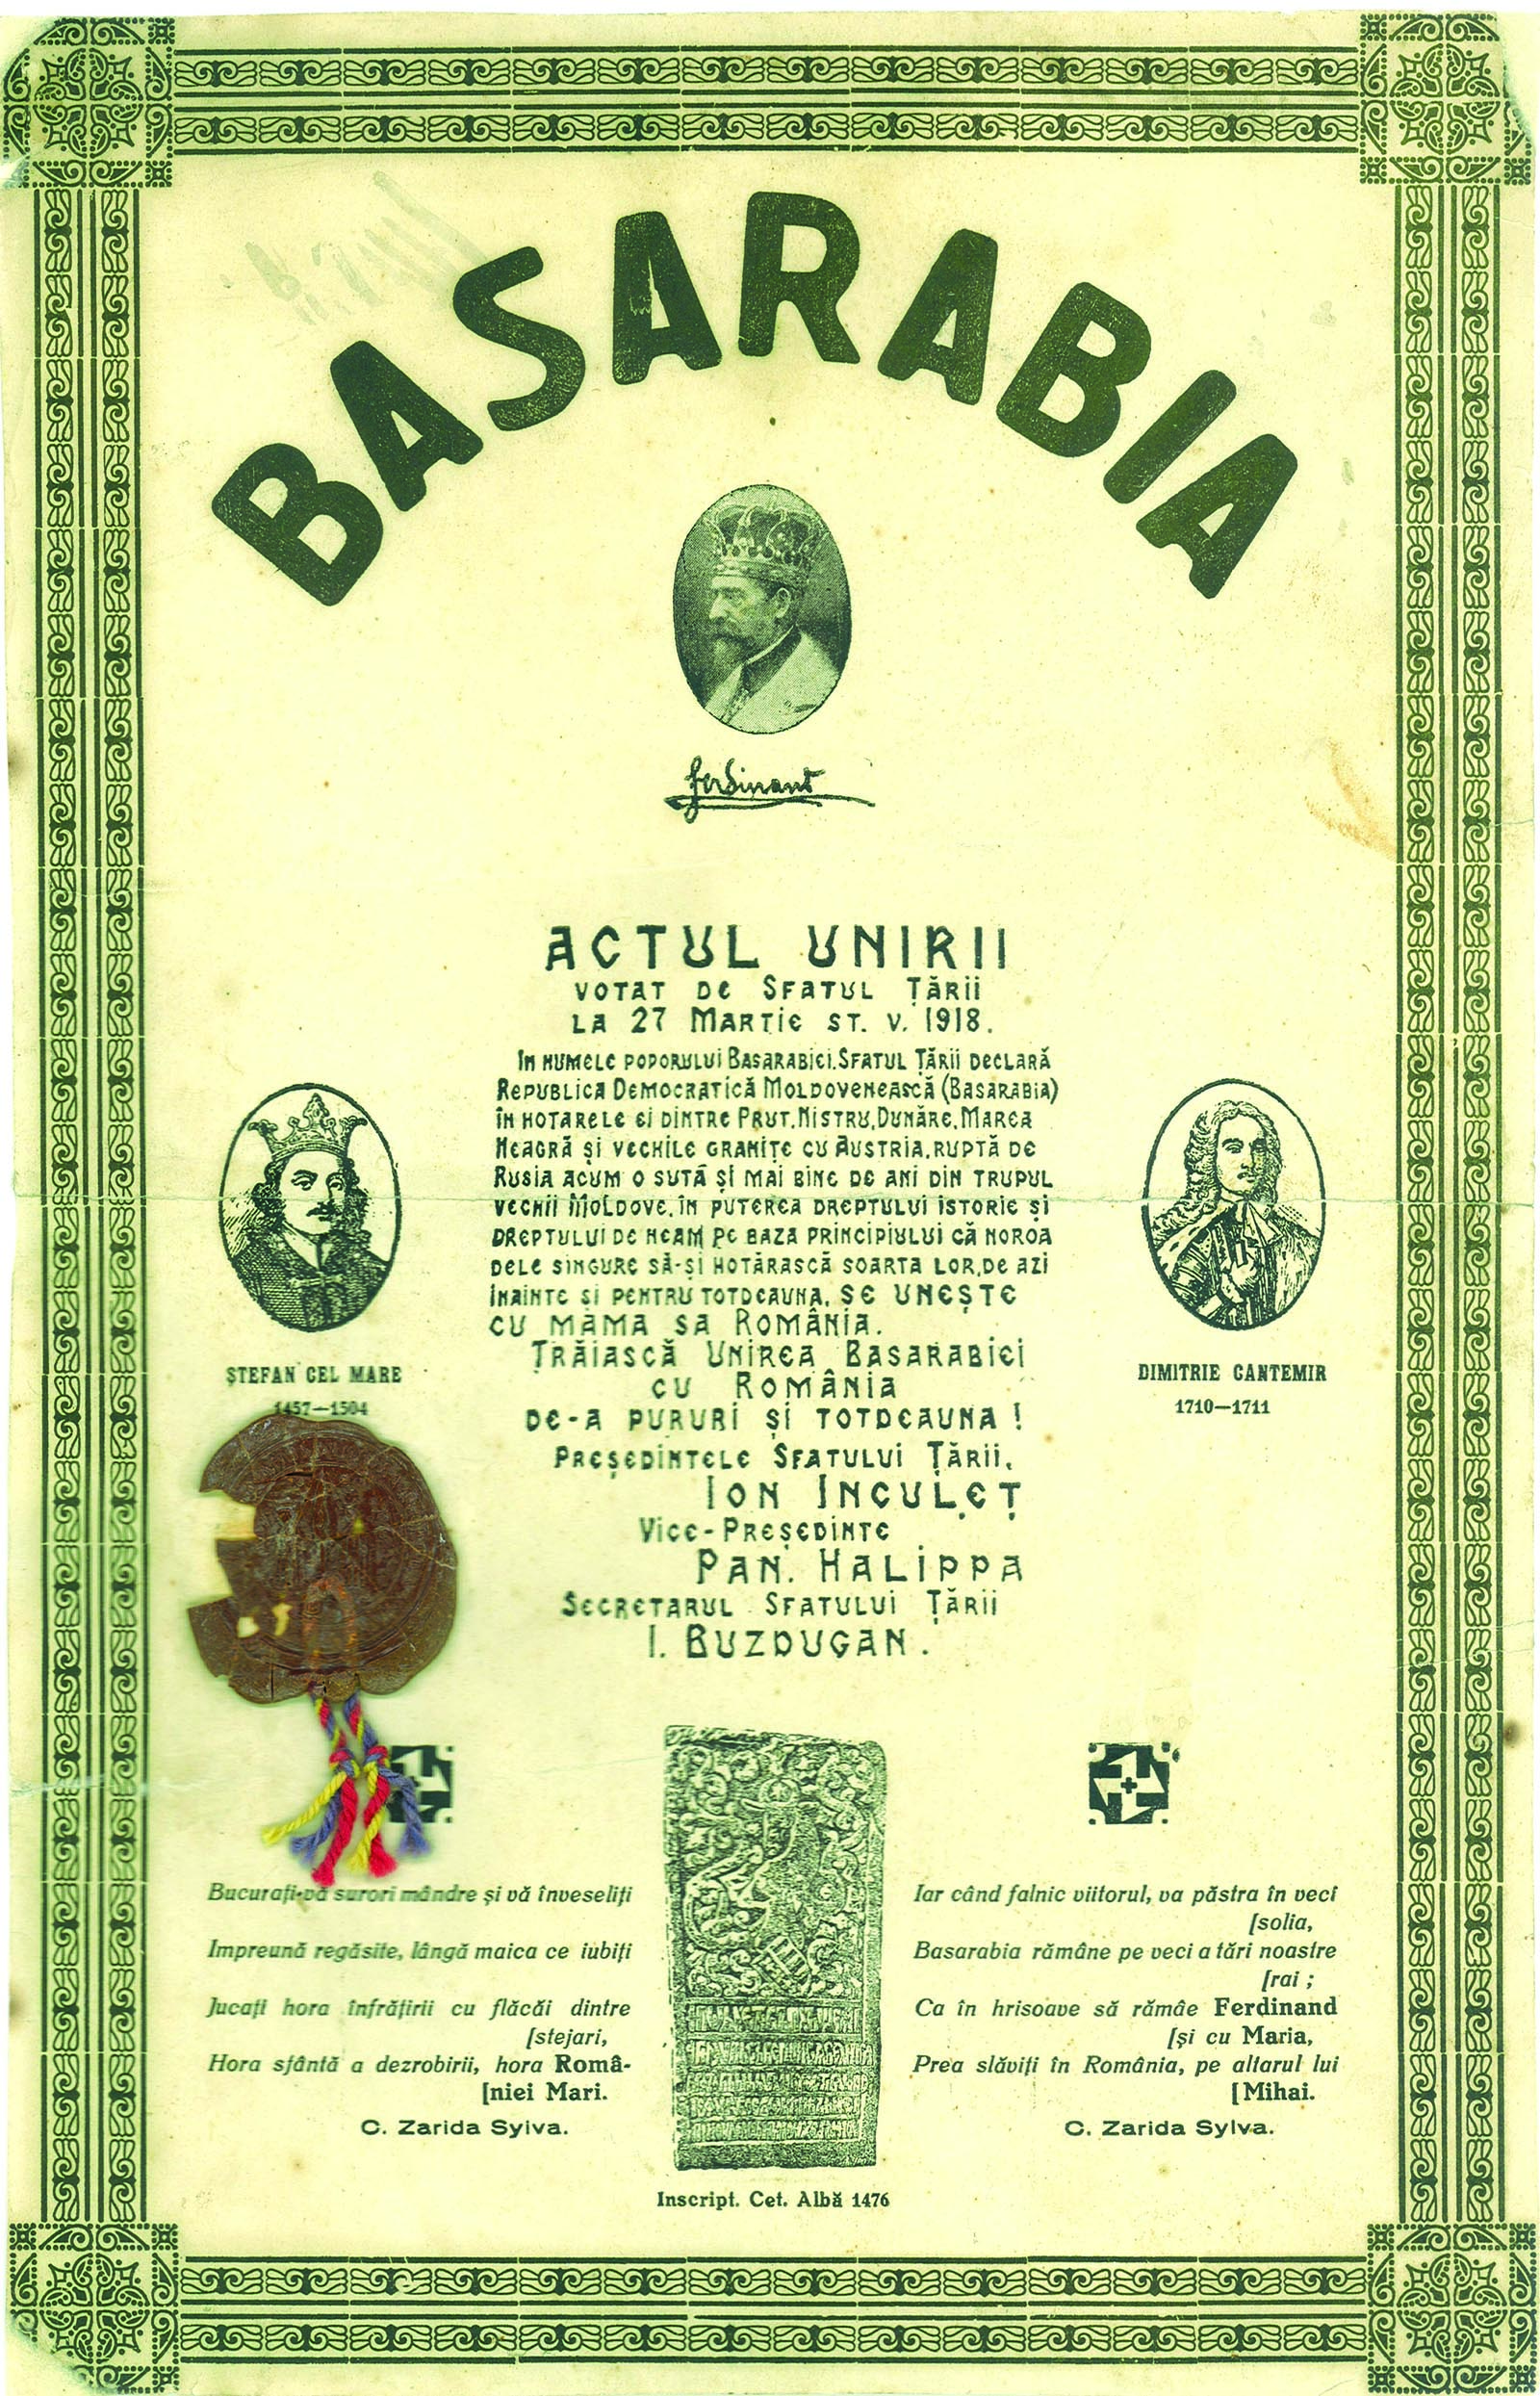 În urma cu 105 ani, pe 27 martie, Sfatul Ţării, întrunit în şedinţă solemnă la Chişinău, a votat unirea Basarabiei cu România